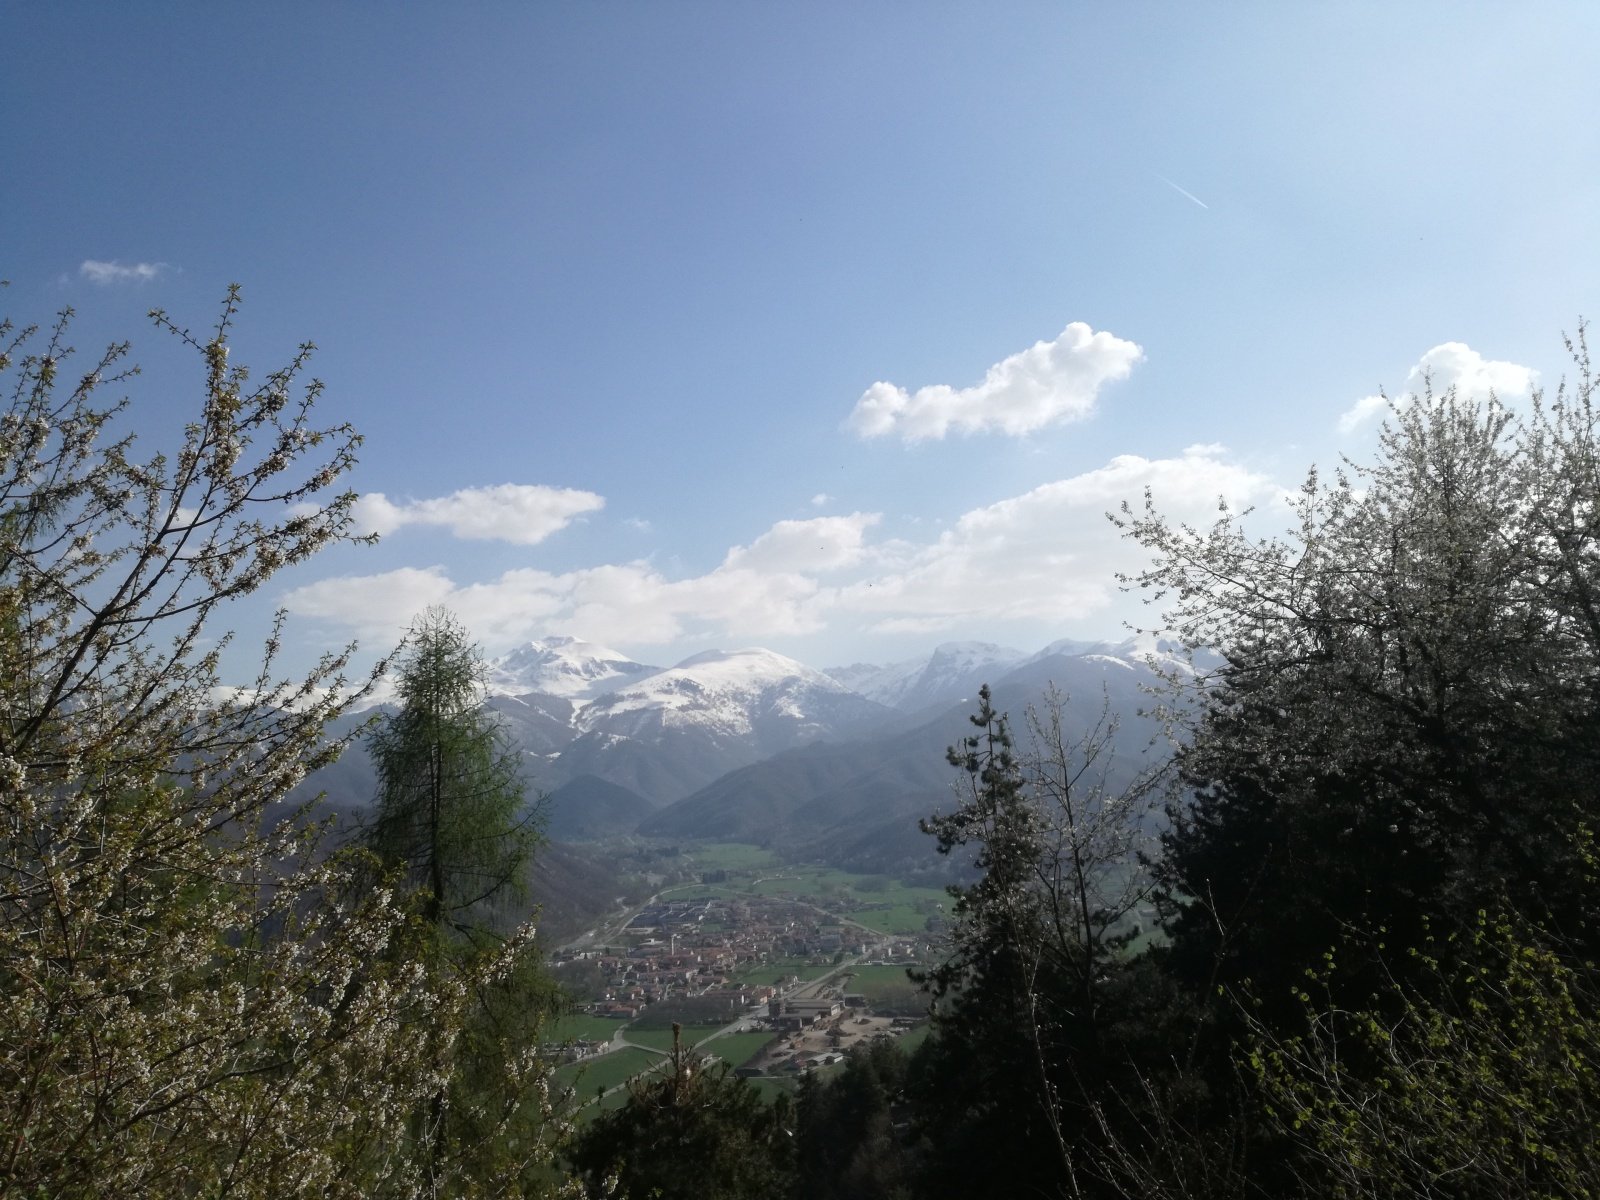 Roccaforte Mondovì e la Val Ellero. Da sinistra si possono riconoscere il Mondolè, la cima Durand, il Cars e il Pigna.